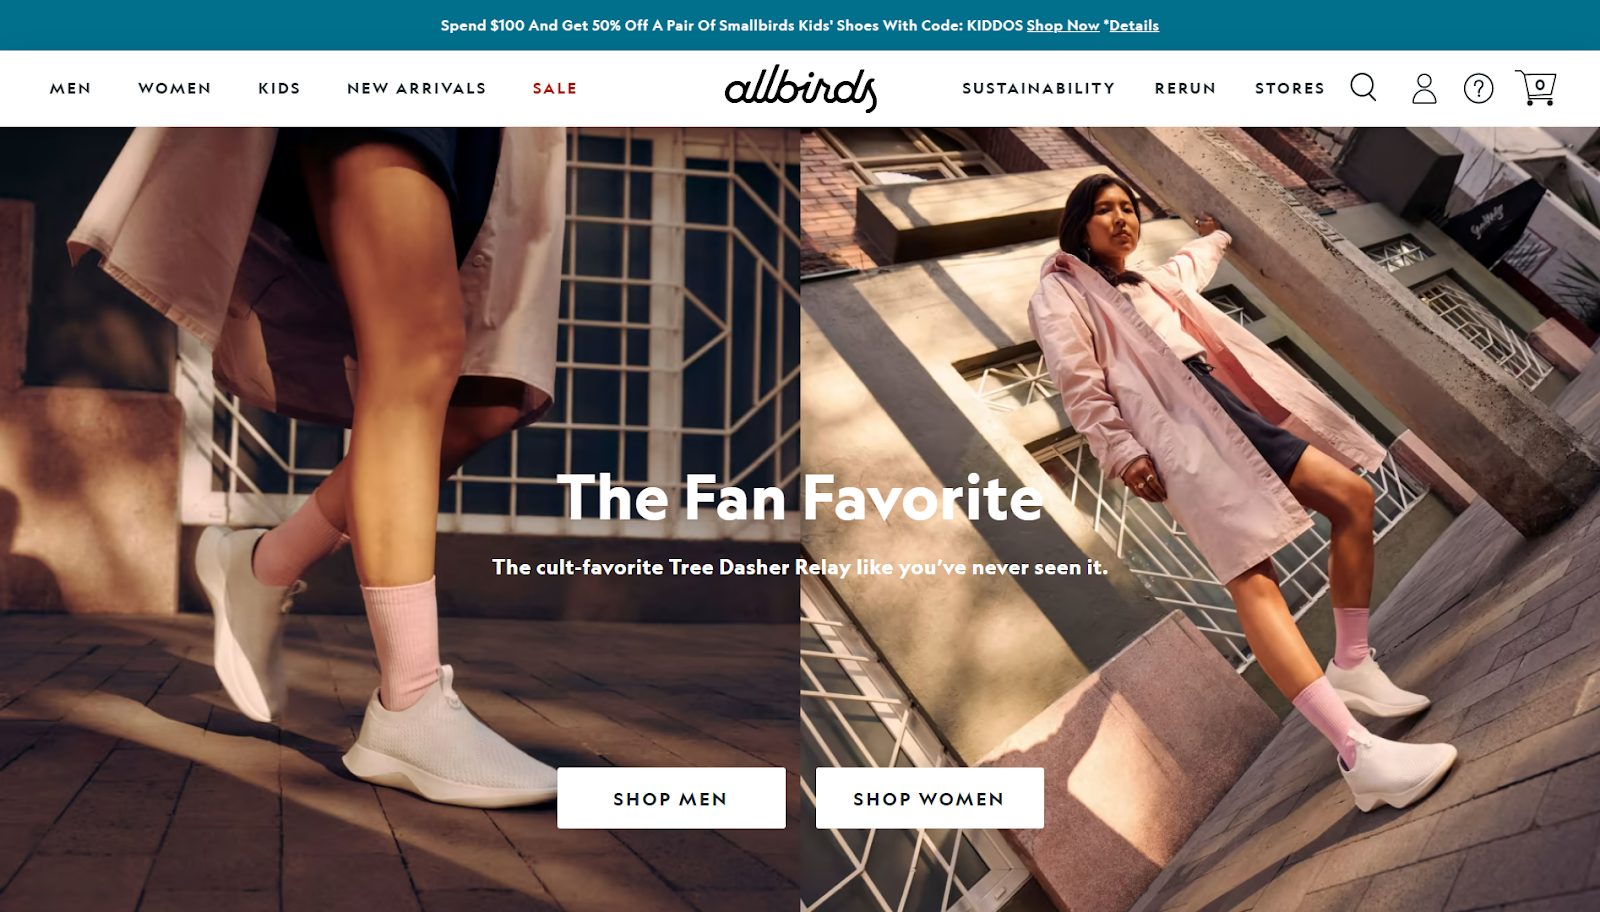 Allbirds’ website